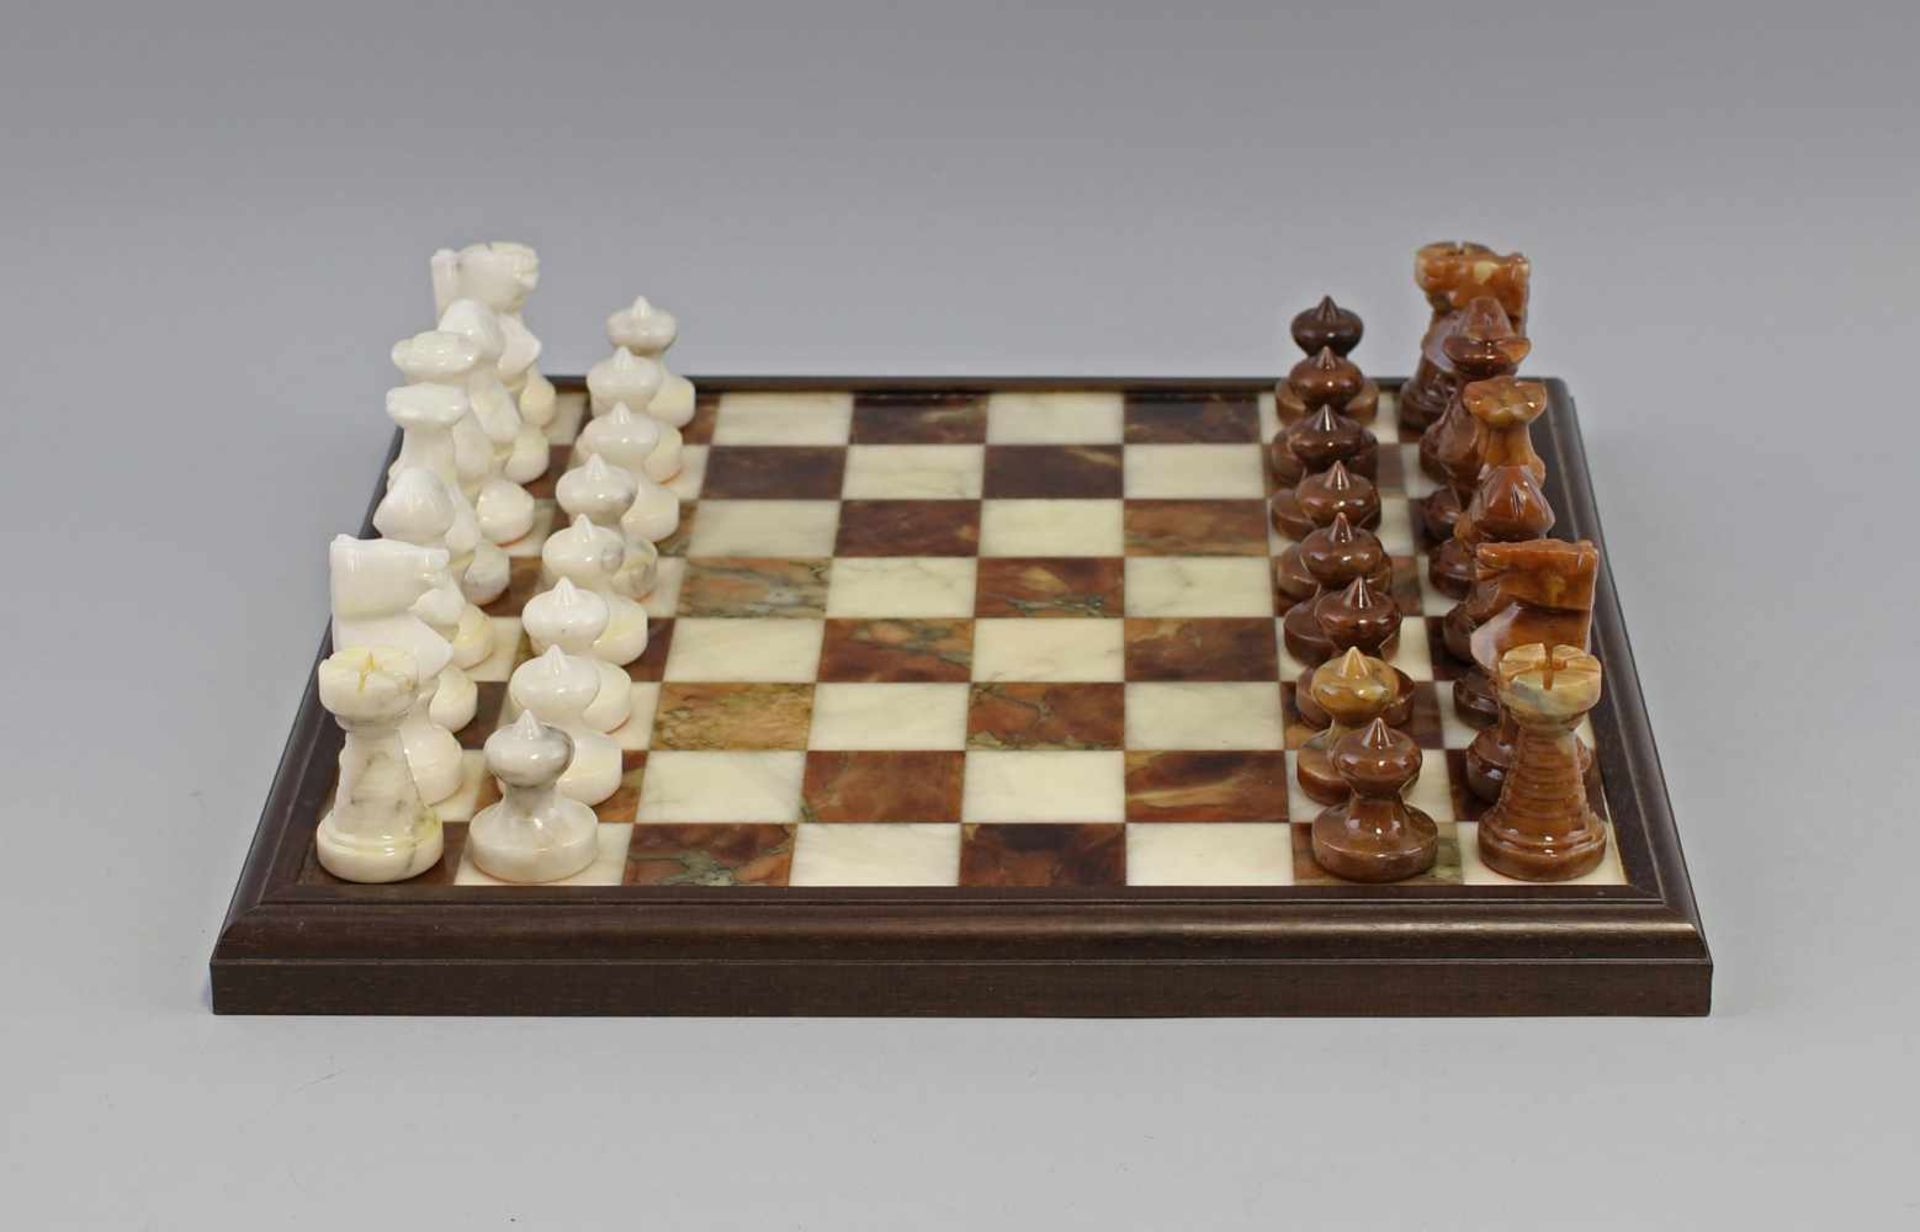 Schachbrett mit FigurenSpielbrett und Figuren aus Stein (Alabaster/Marmor), Hersteller C.A. & A.,